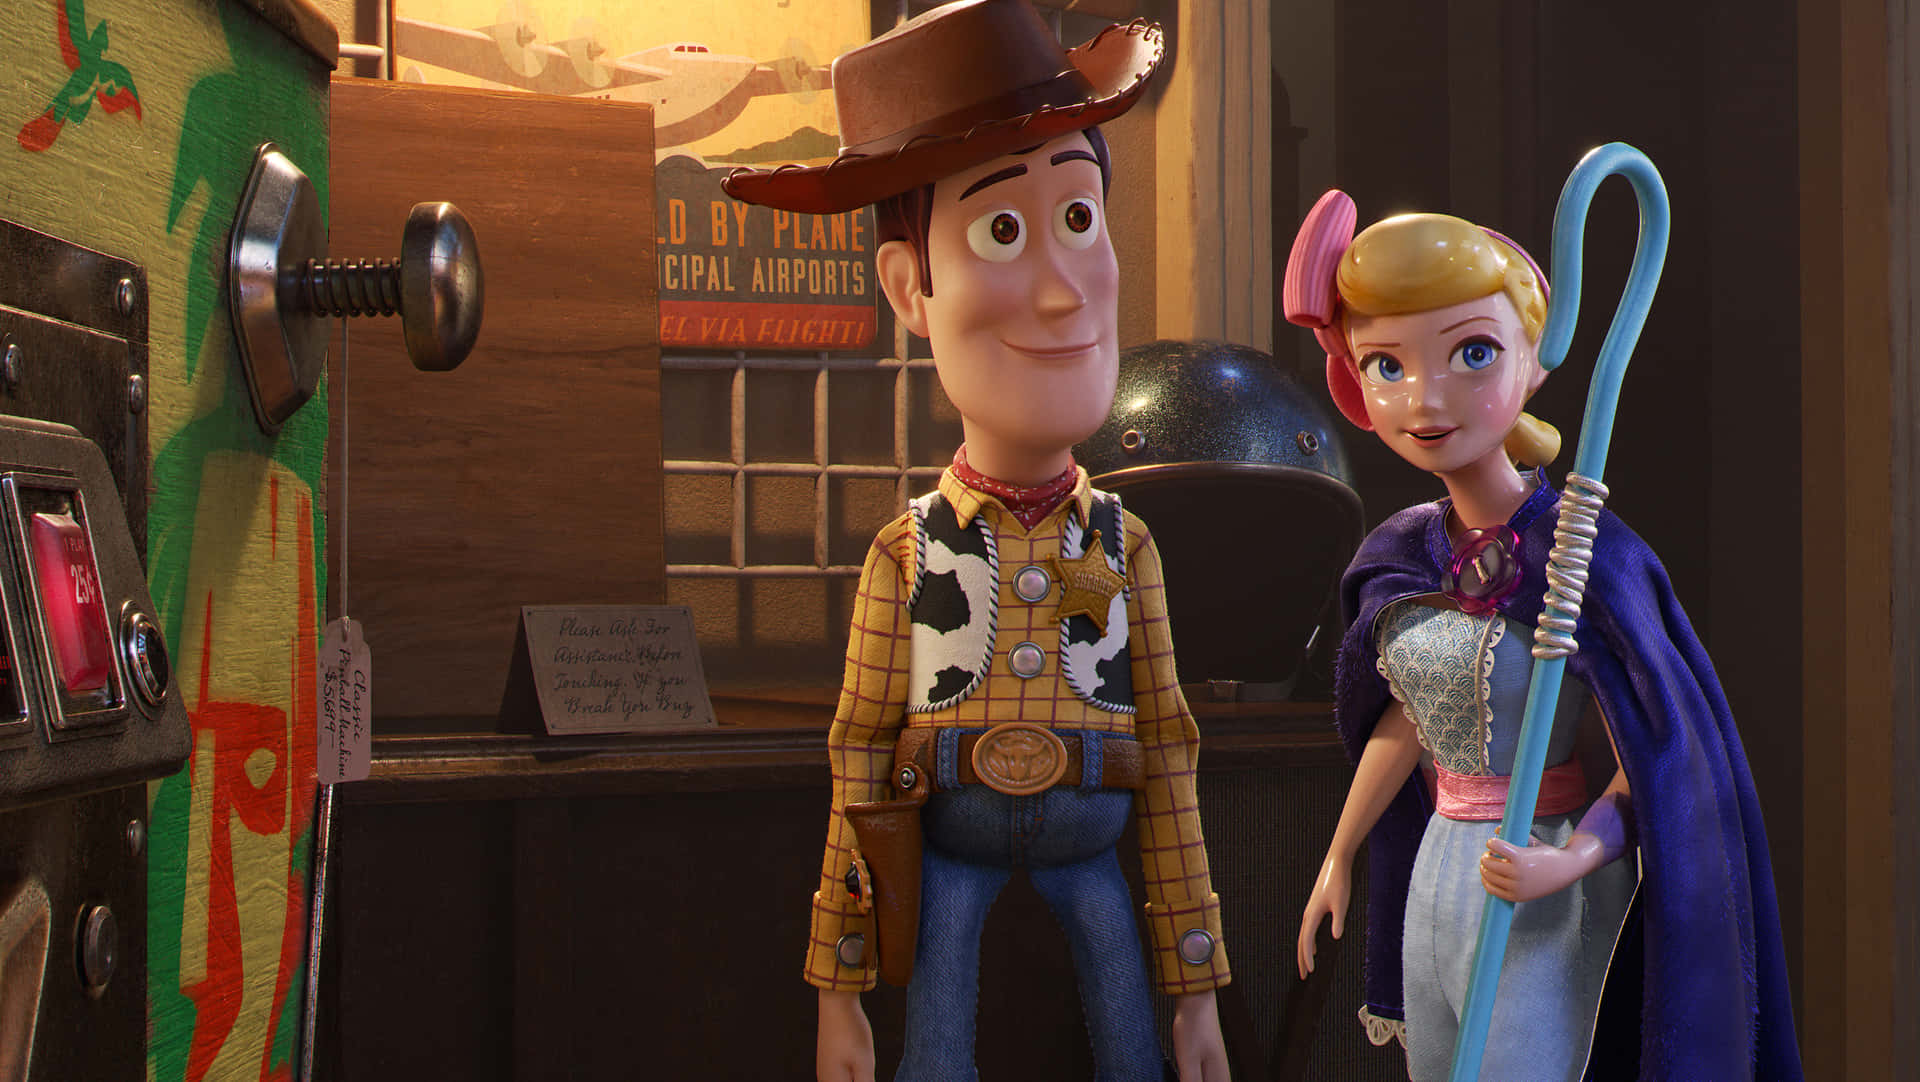 Uniscitia Woody E Ai Suoi Amici Nel Loro Avventuroso Viaggio In Toy Story 4